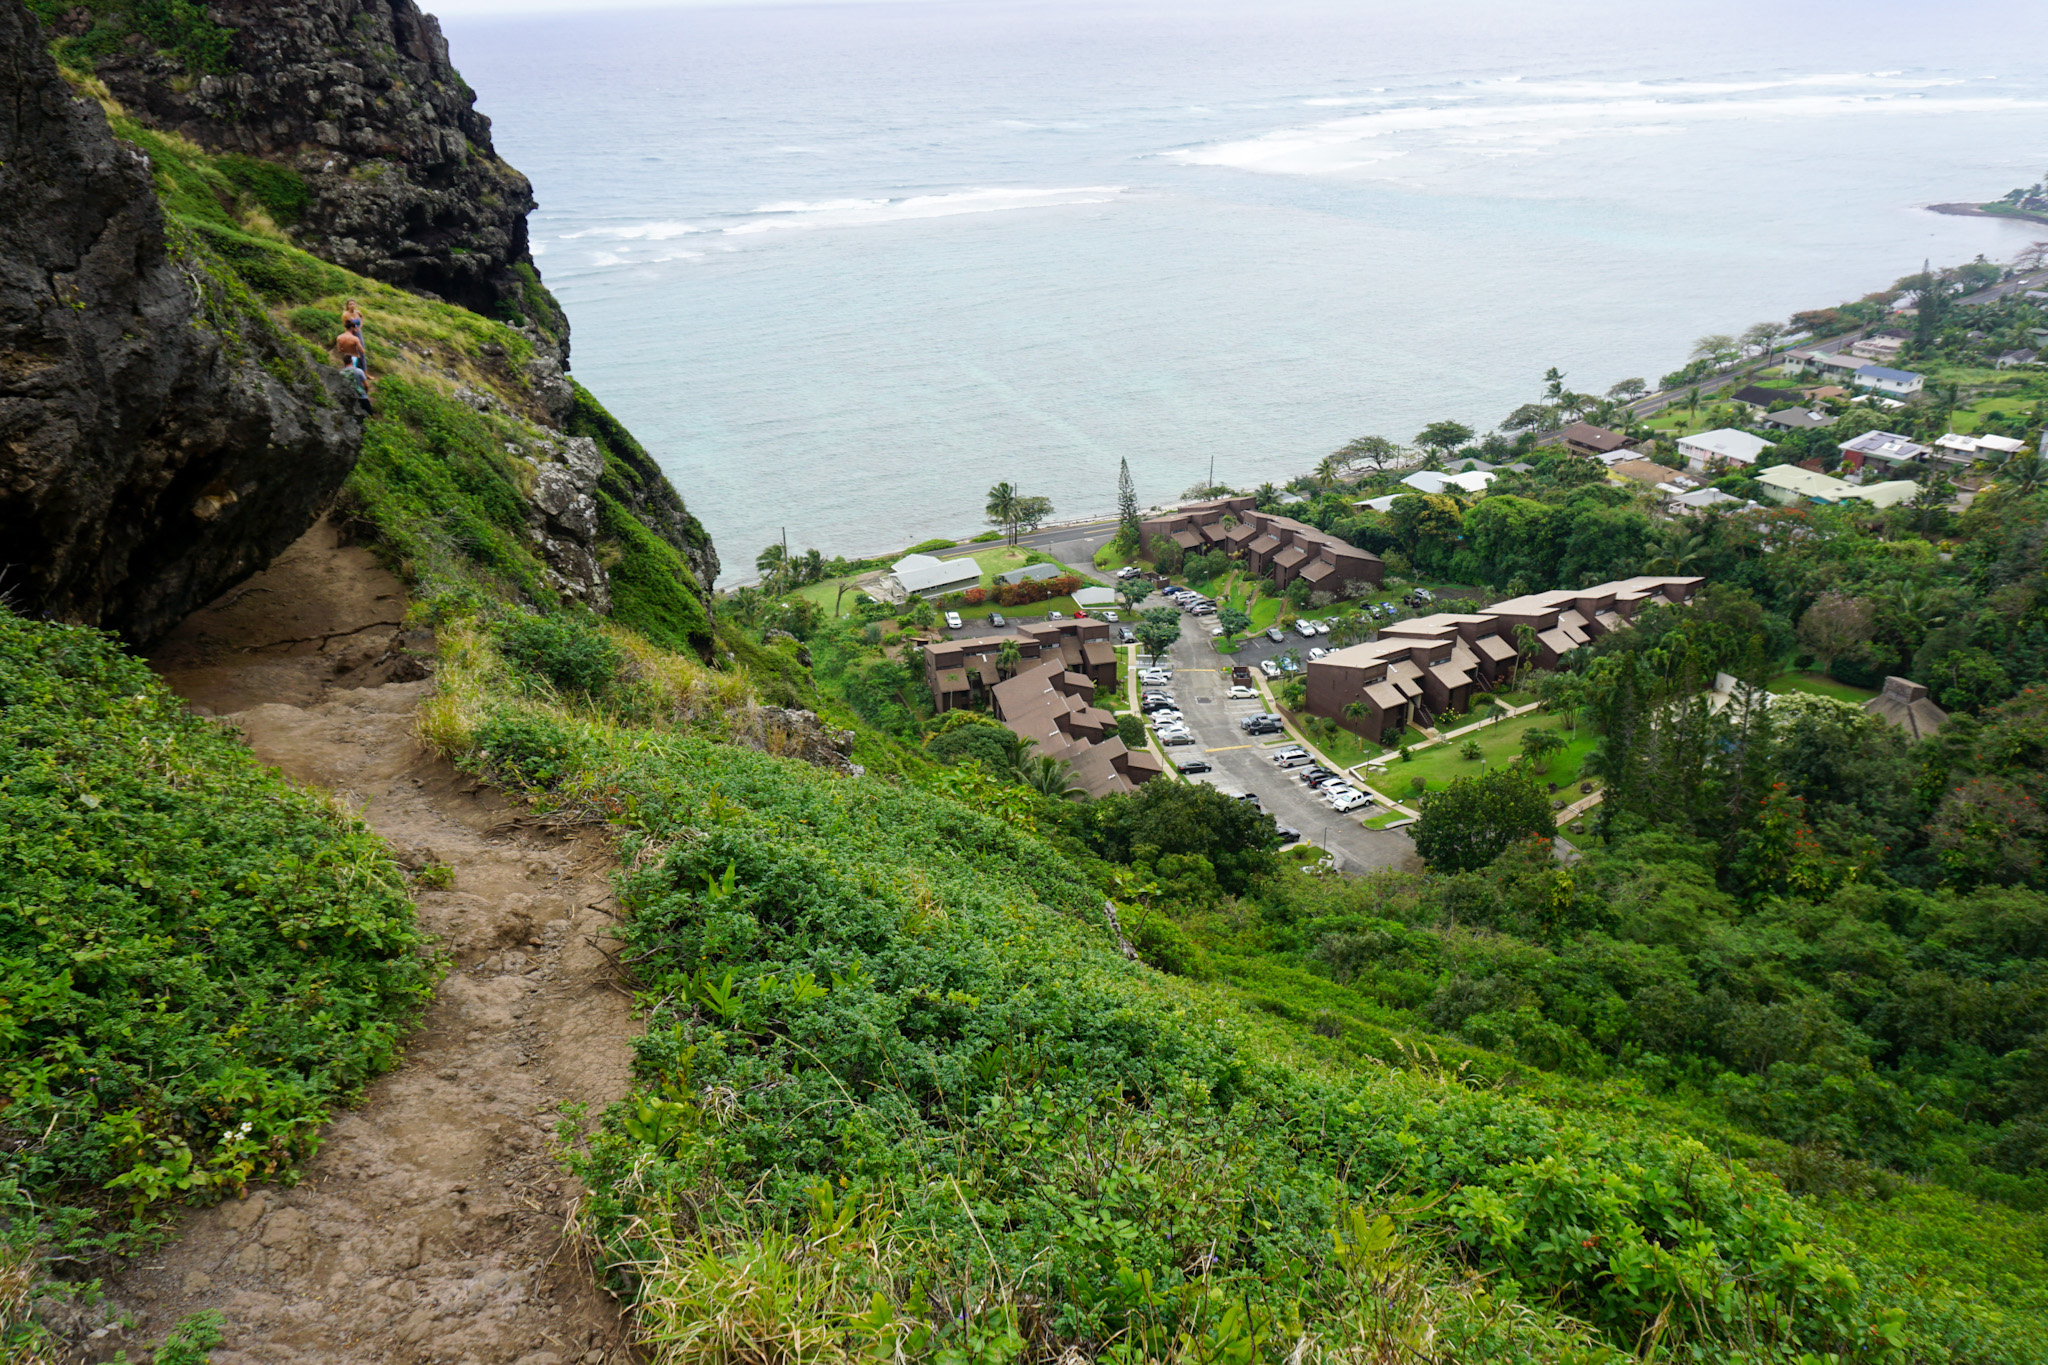 View of neighborhood and ocean below cliff drop